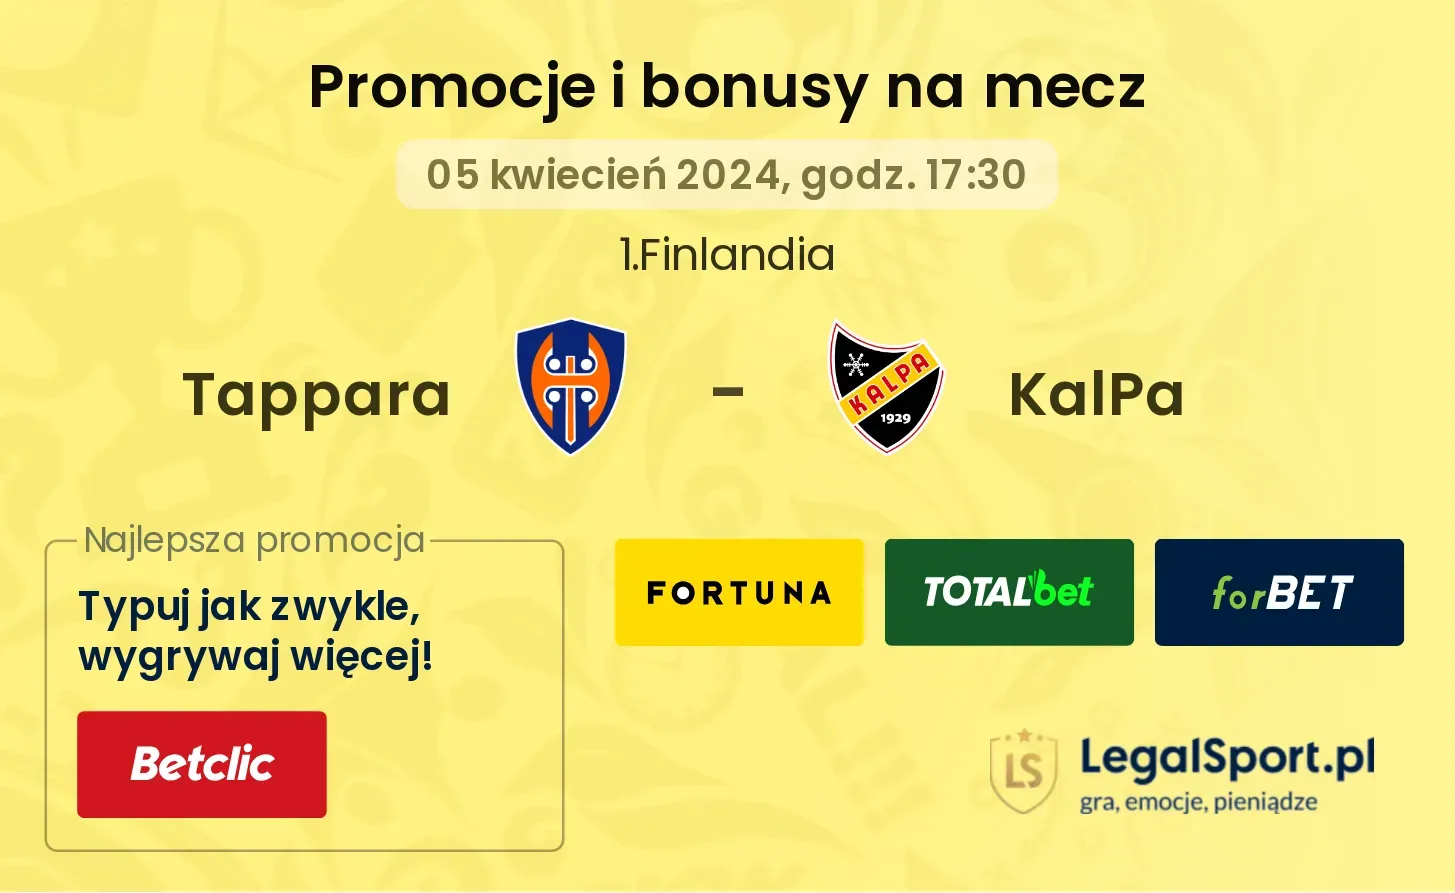 Tappara - KalPa promocje bonusy na mecz